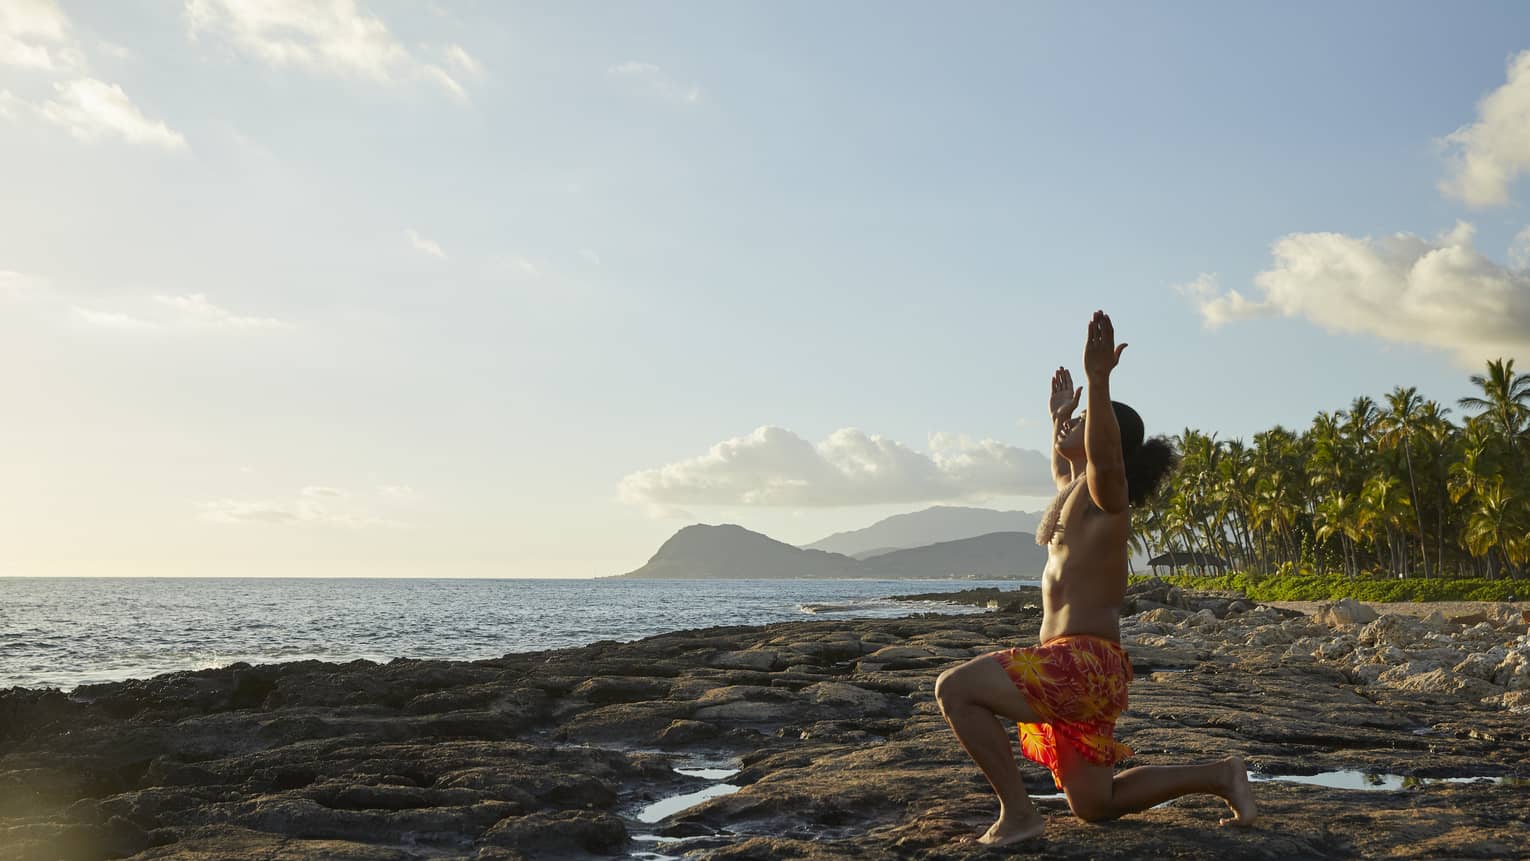 A morning routine on oceanside rocks in Oahu